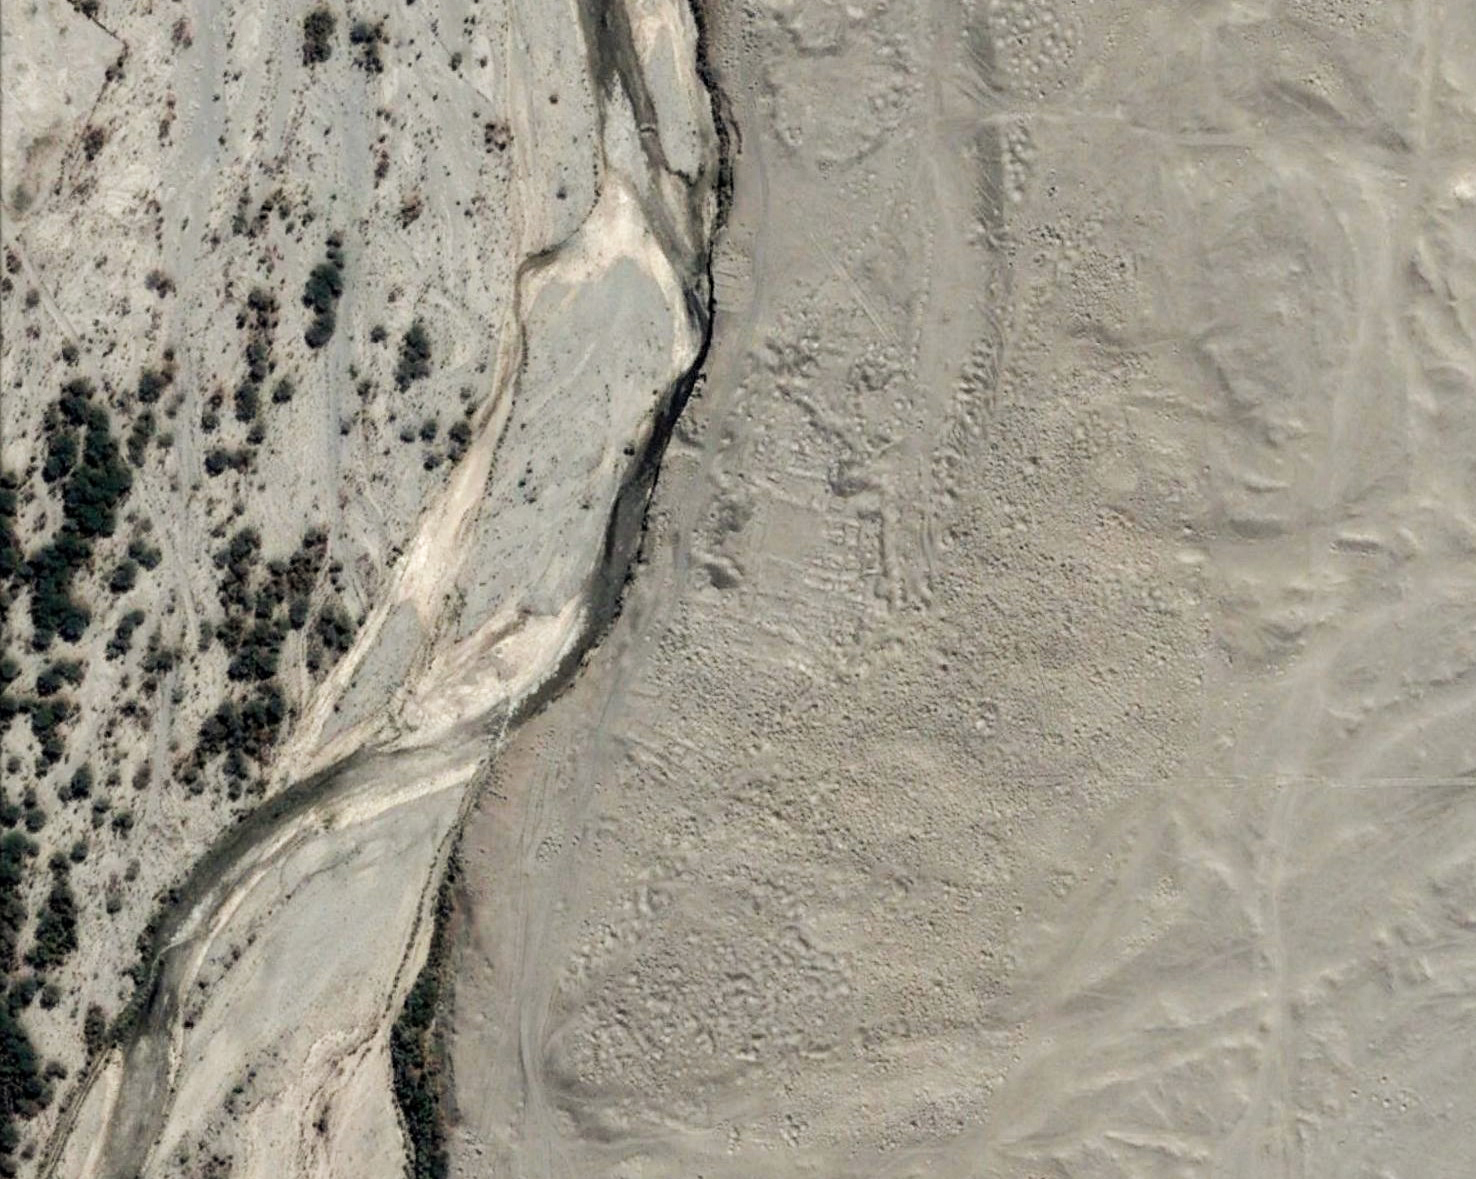 Une ville pillée dans le désert de Nazca. Image copyright Digital Globe.